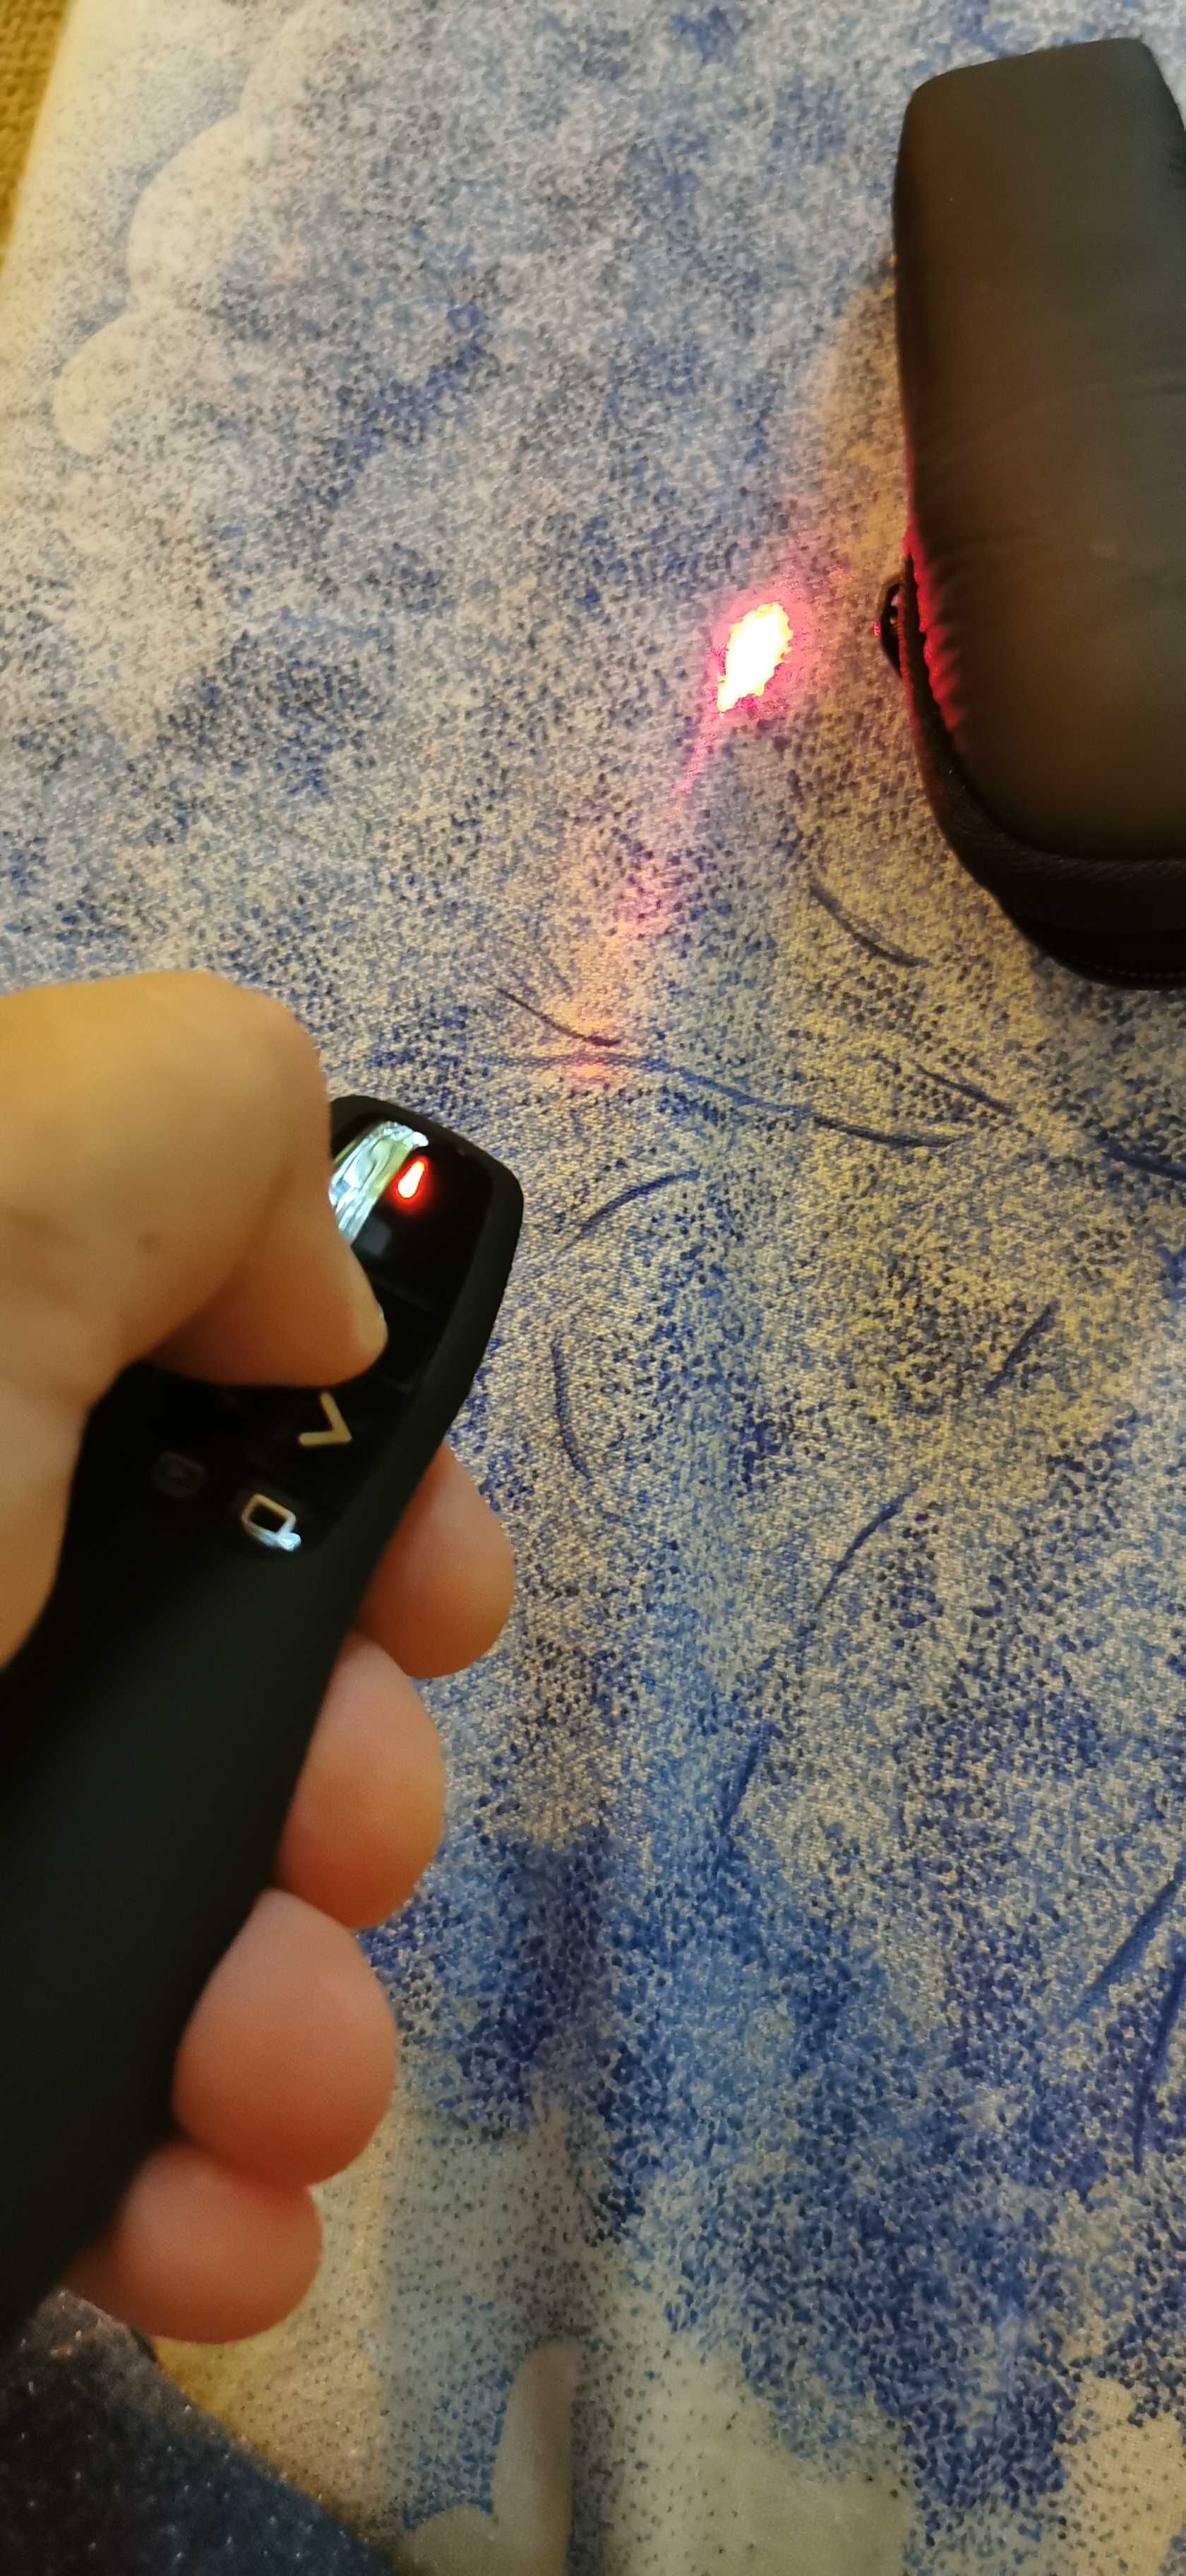 laser pointer presenter